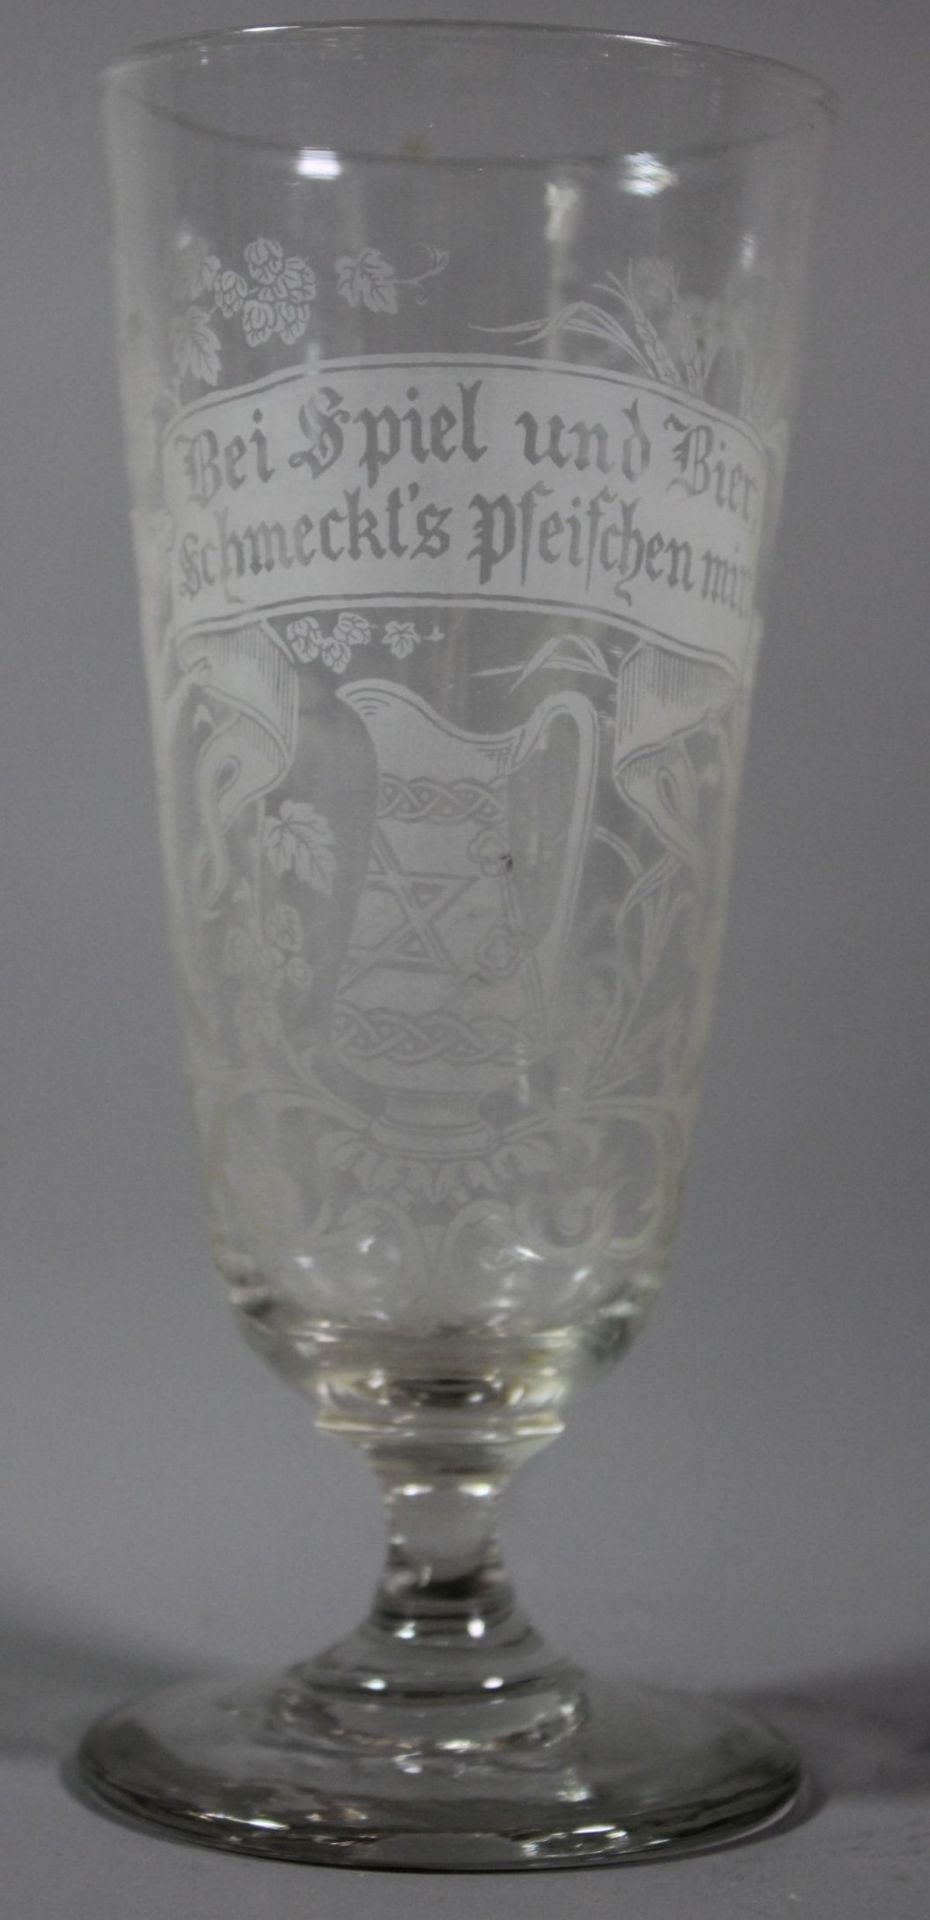 Bierglas auf Stand, älter, Sinnspruch "Bei Spiel und Bier, schmeckt's Pfeifchen mir", H-16cm.